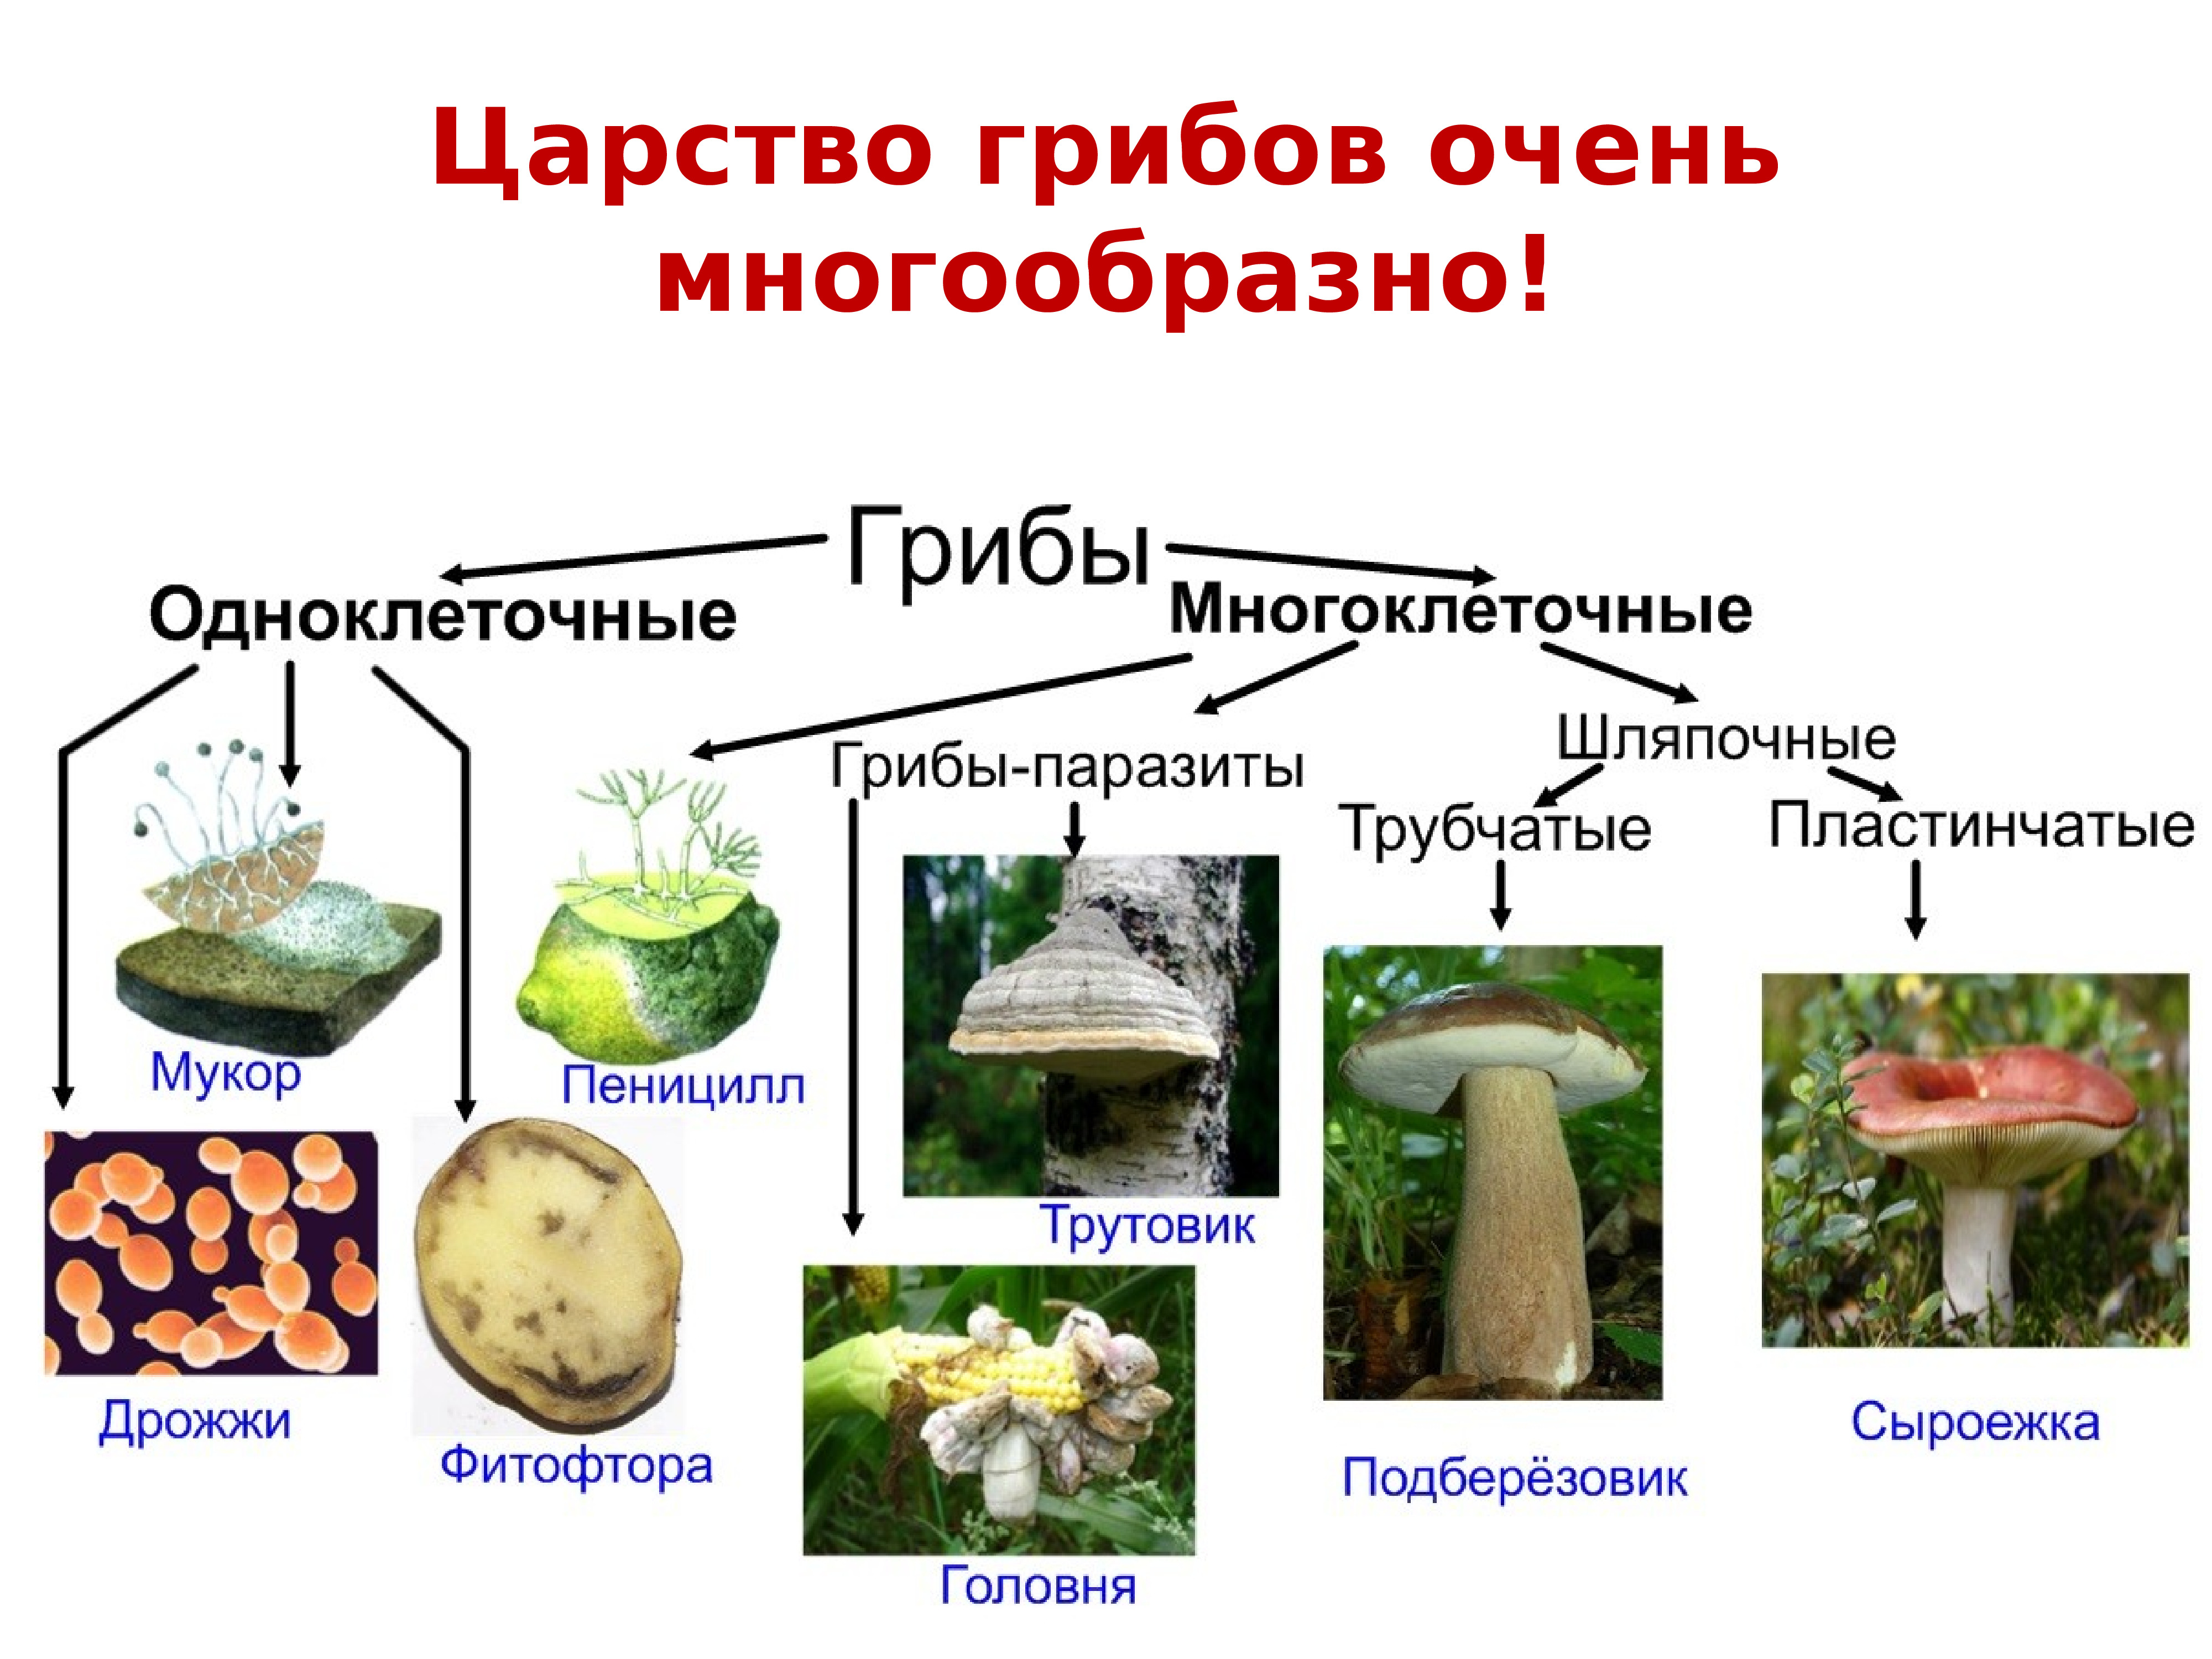 Одноклеточные и многоклеточные царство грибы